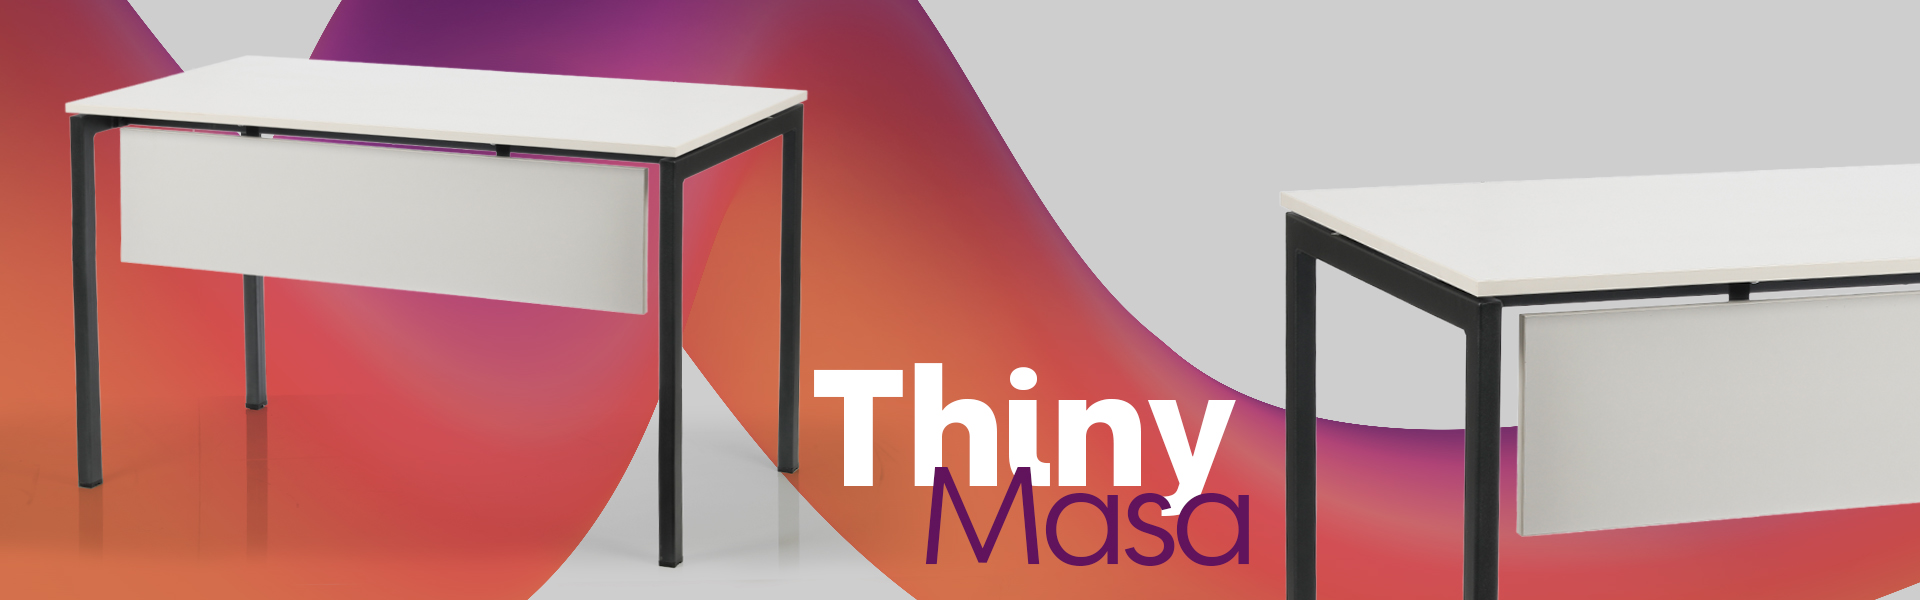 Thiny Masa